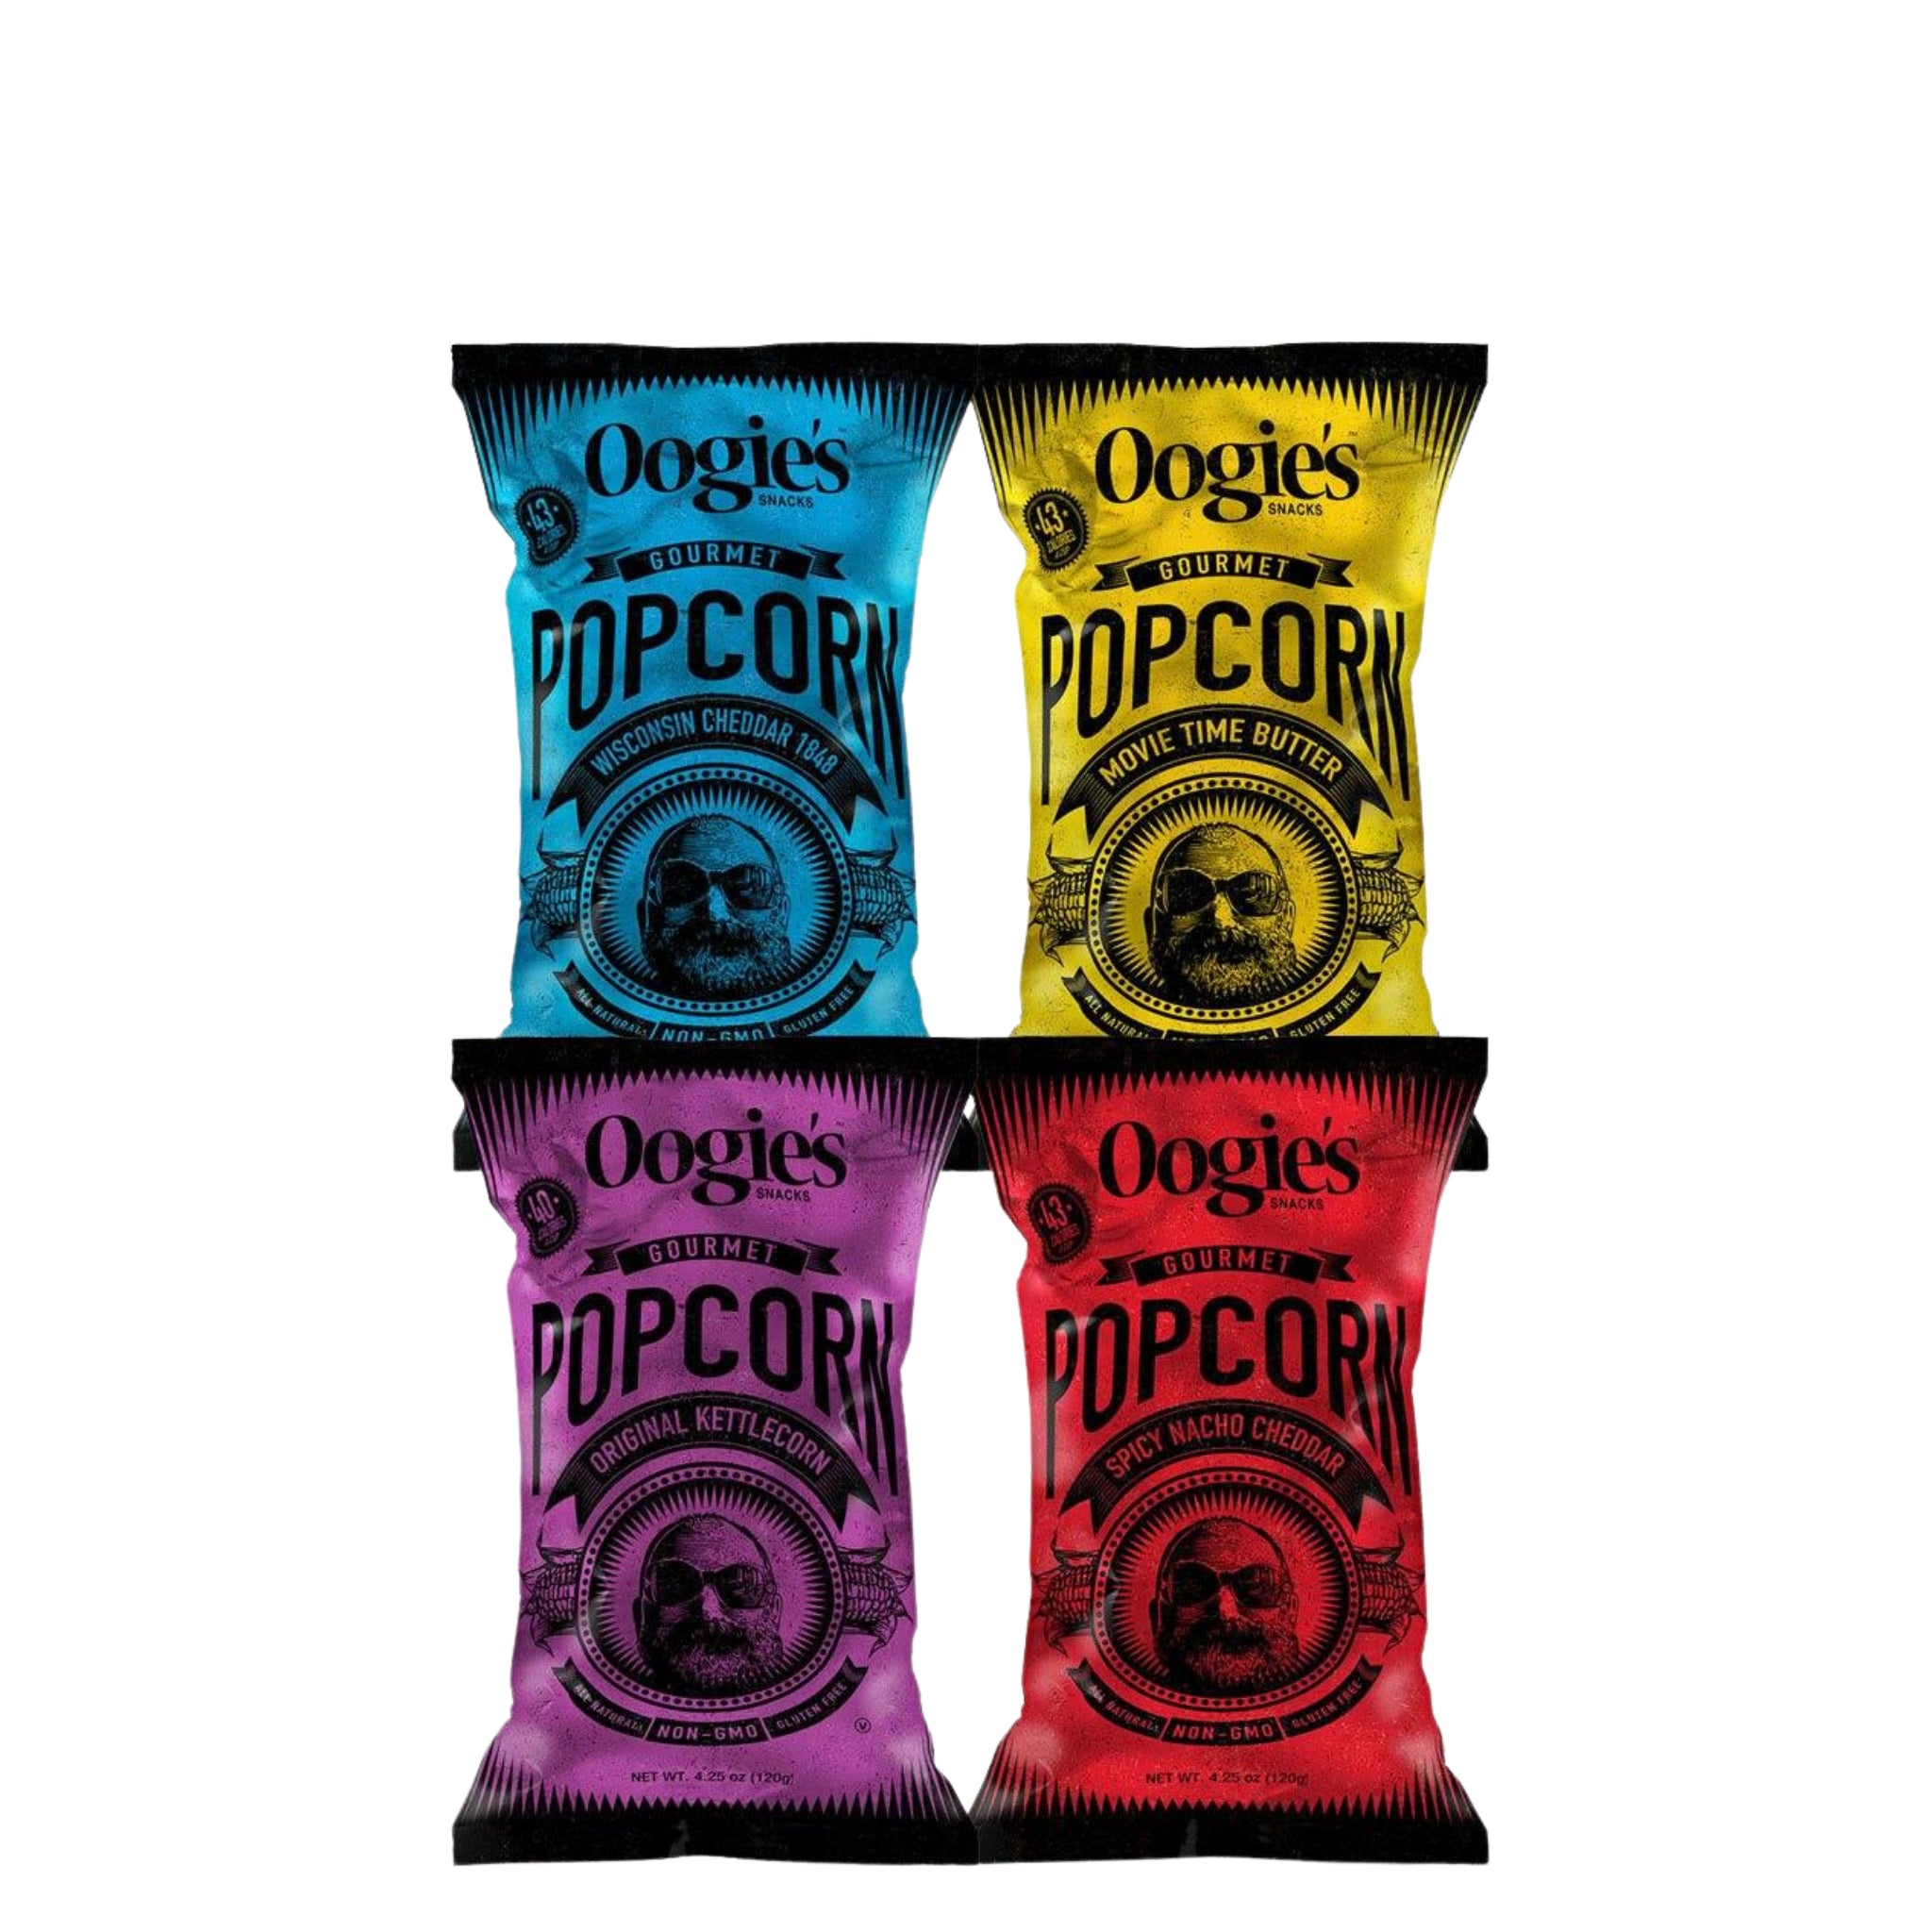 Four fan favorite Oogie's popcorn flavors